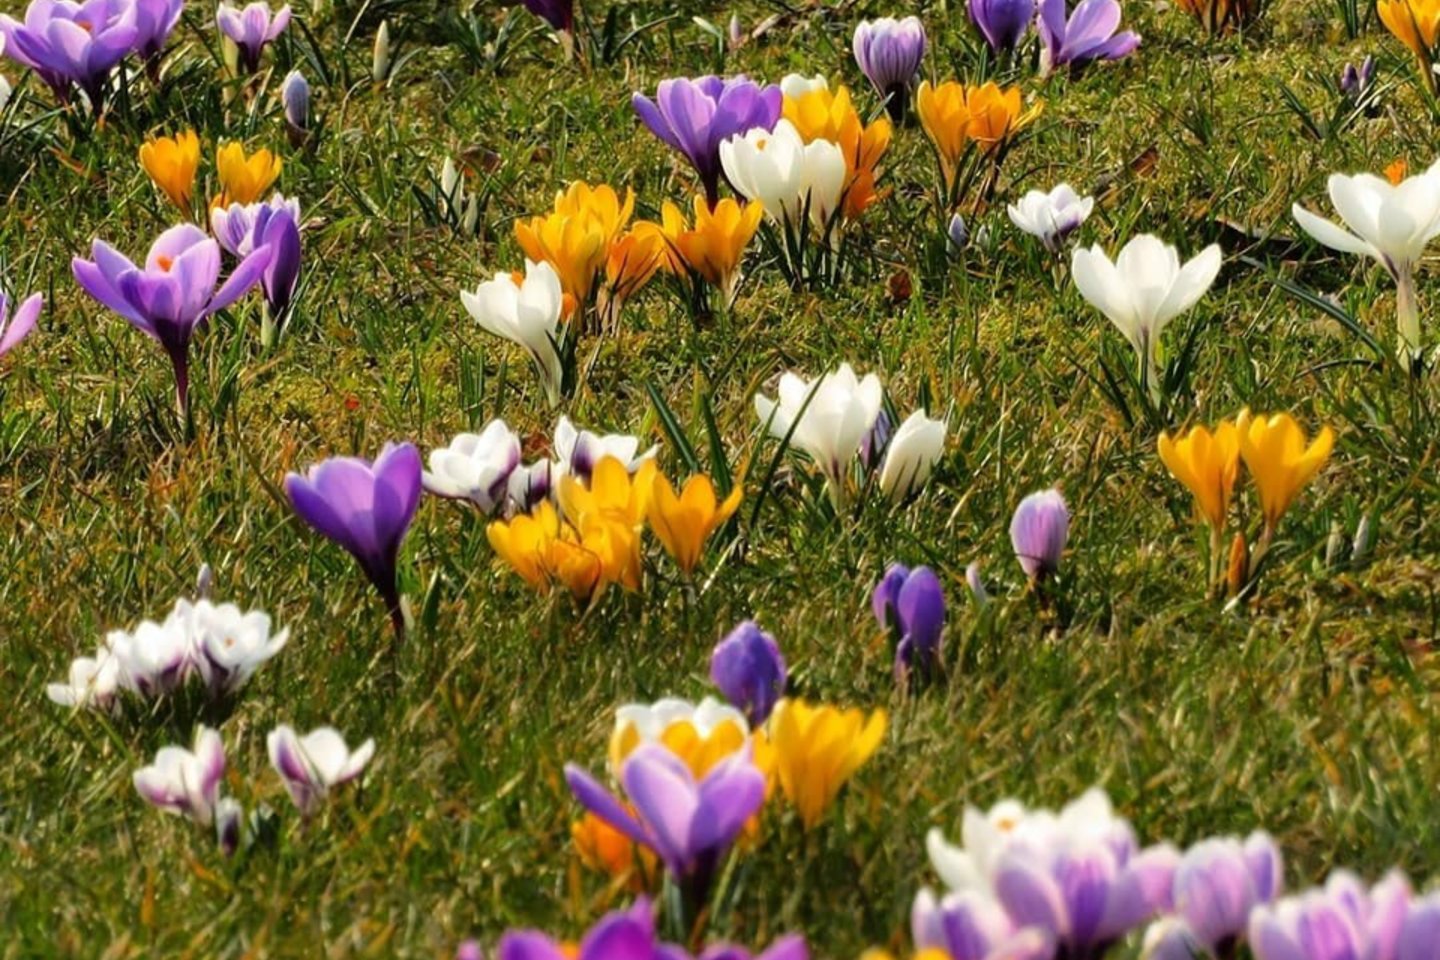 Daugelio rūšių krokai auginami kaip dekoratyviniai, anksti pavasarį žydintys augalai.<br> H. Bask/„Klaipėda, aš su tavim“ nuotr.